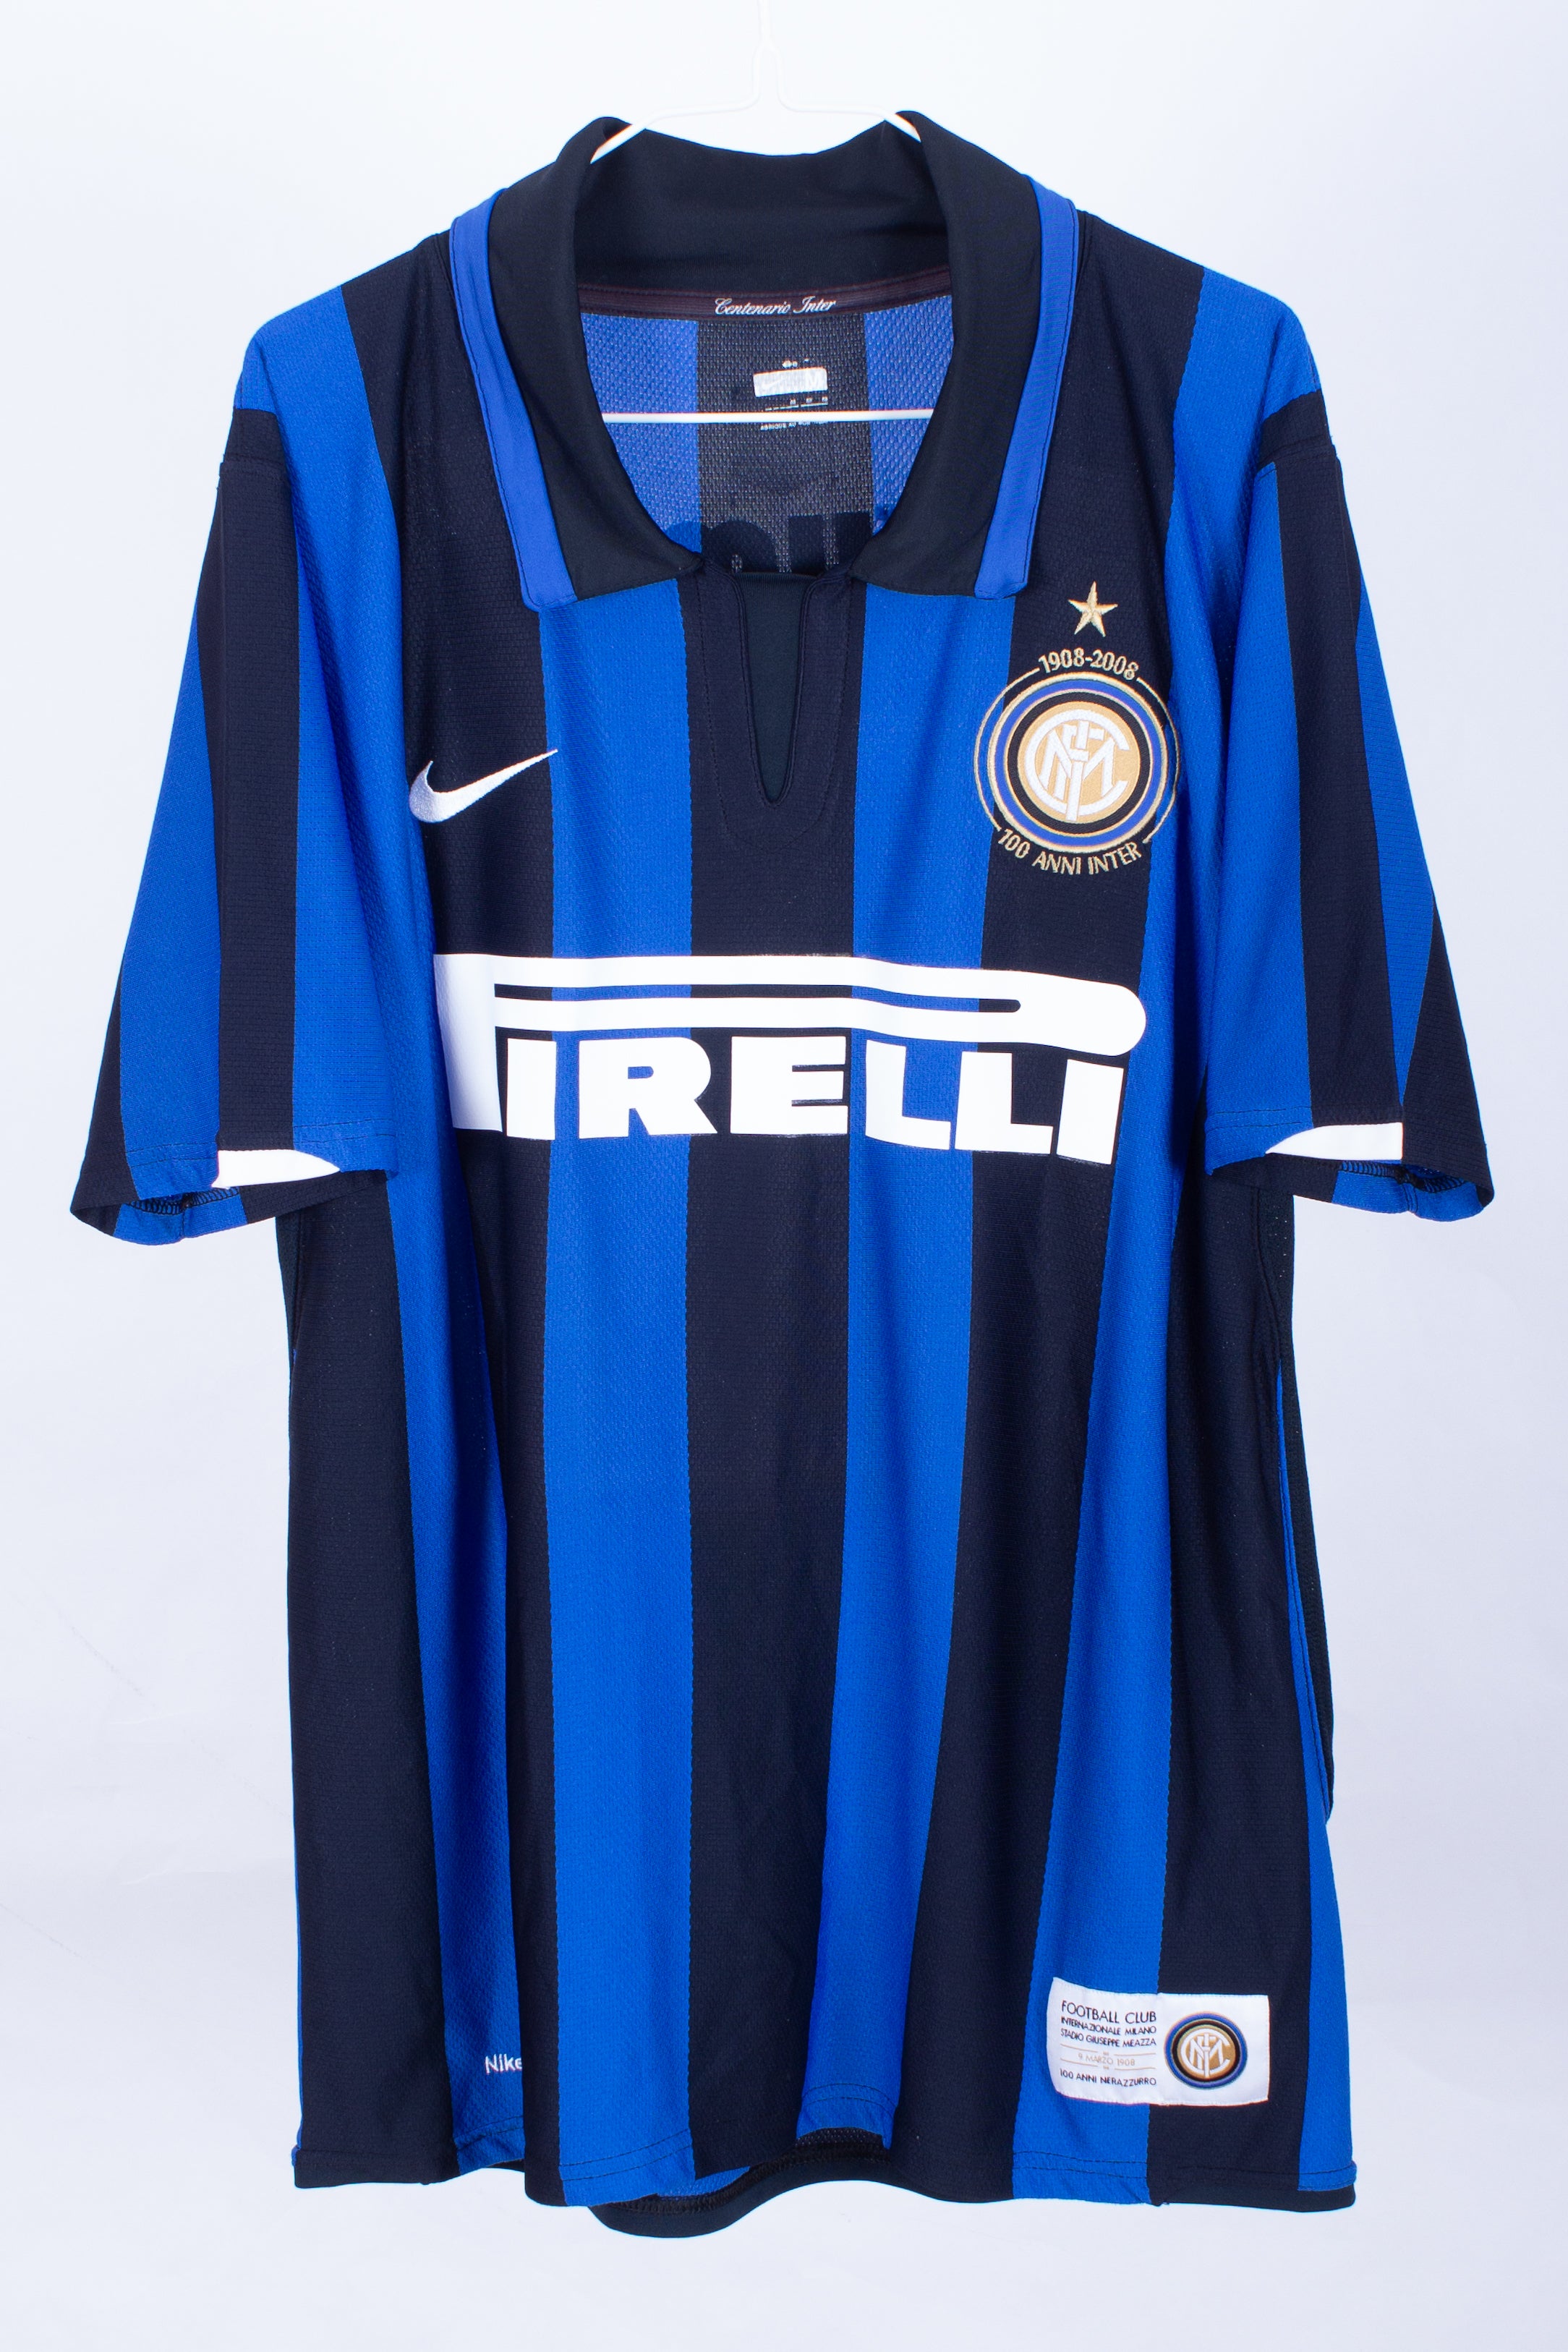 Inter Milan 2007/08 Home Shirt (Ibrahimovic #8) (M)